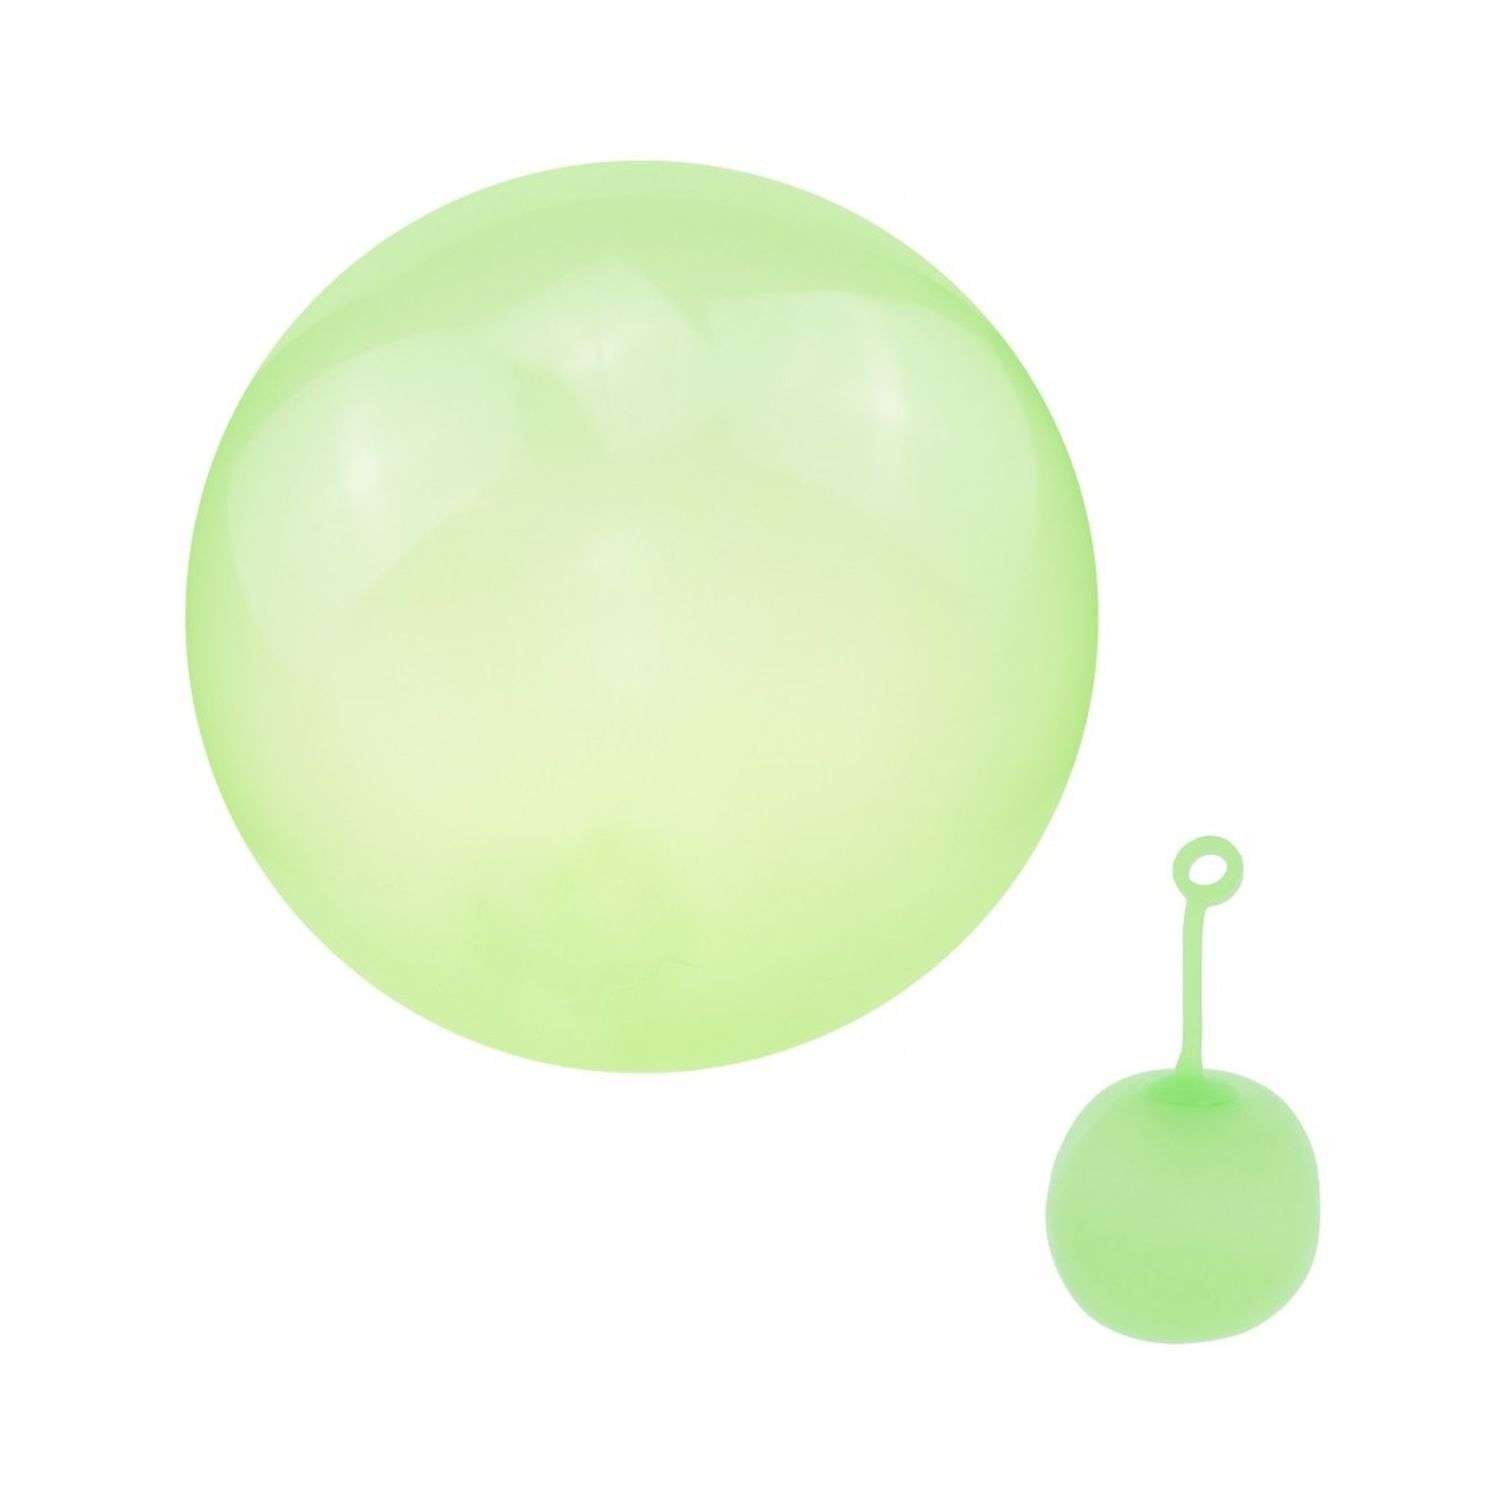 Суперпрочный надувной шар Seichi 80 см зеленый - фото 2